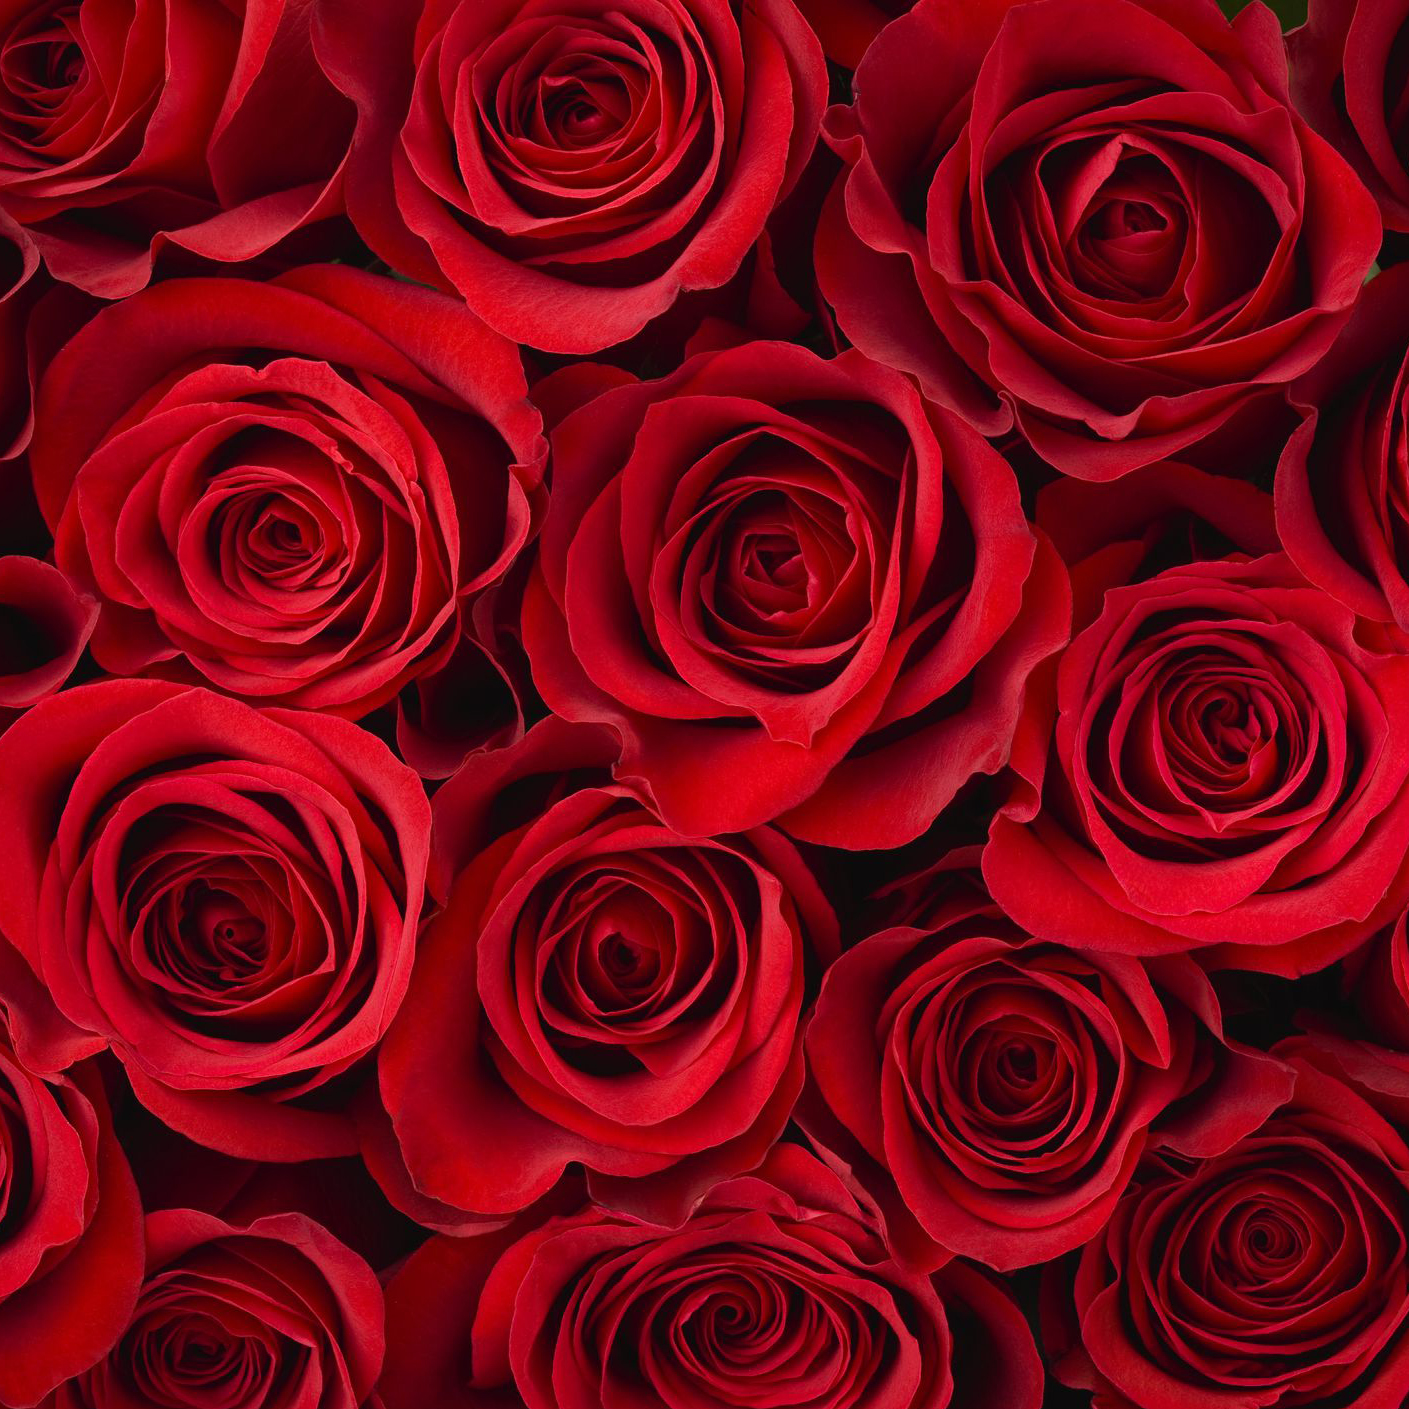 red-roses-183274994-5882289c3df78c2ccd7f1c0e.jpg